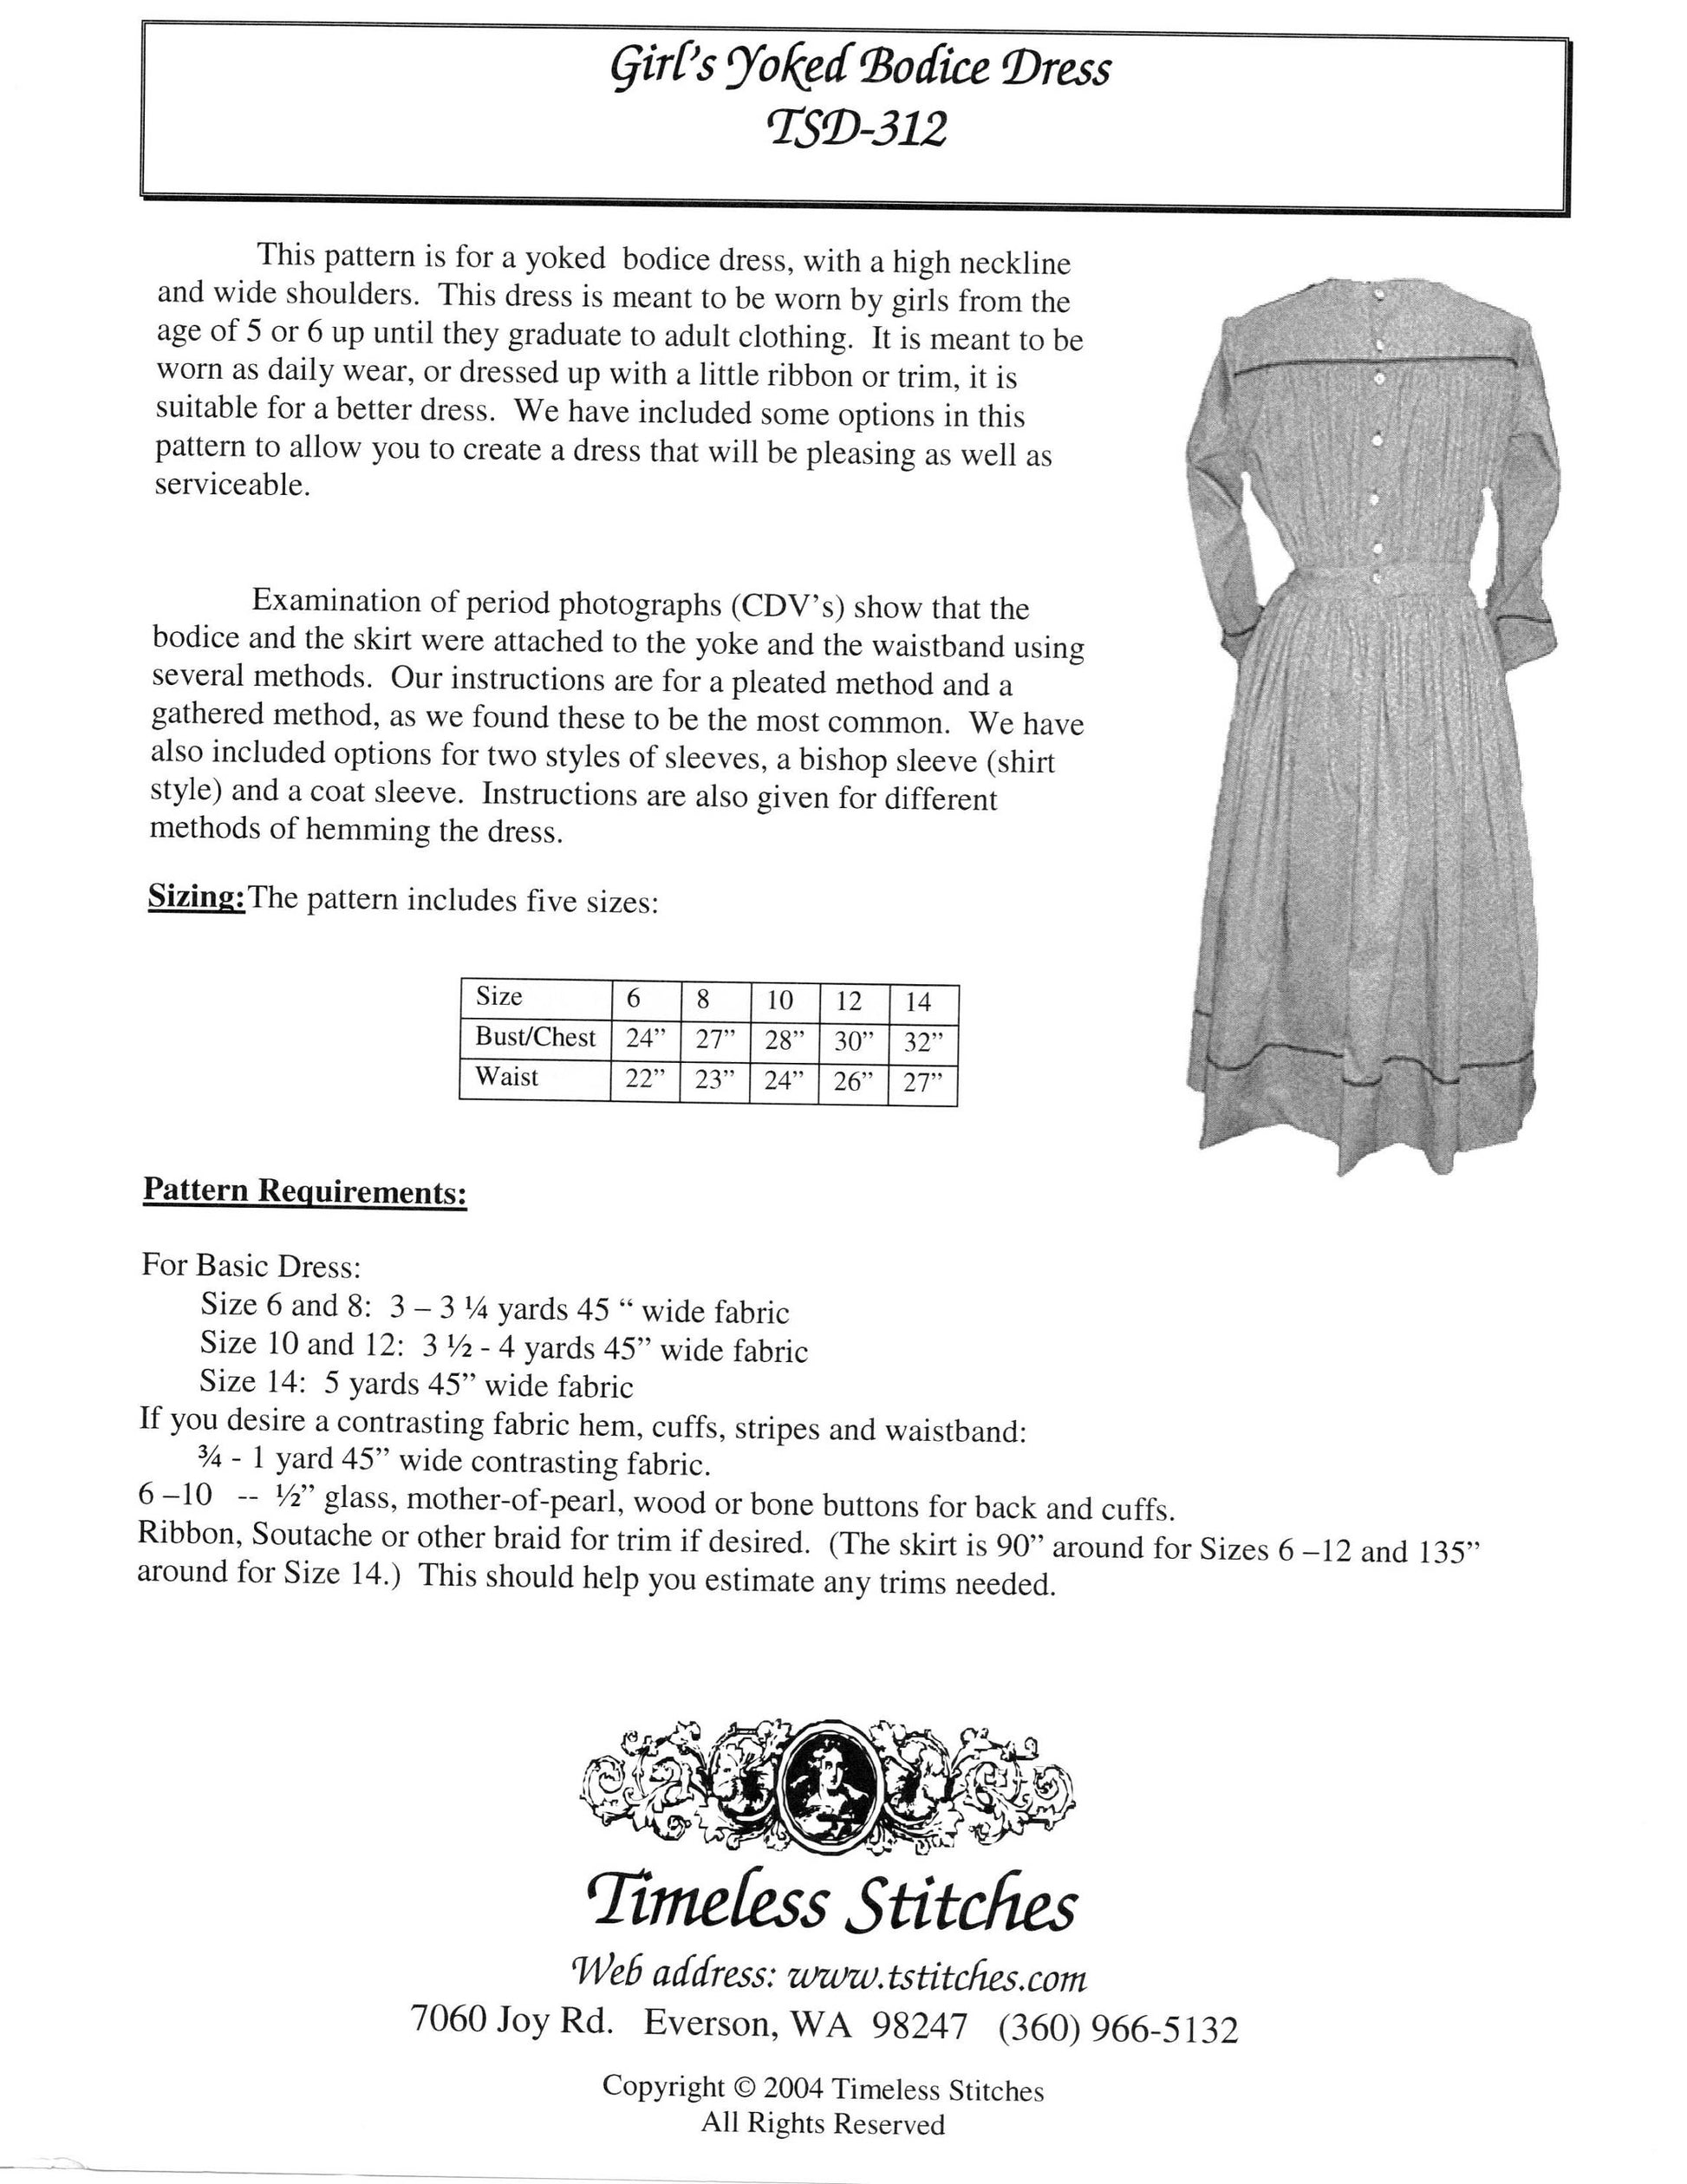 Girl's Yoked Bodice Dress /19th Century Girls Dress/ Timeless Stitches Sewing Pattern TSD-312 Girl's Yoked Bodice Dress